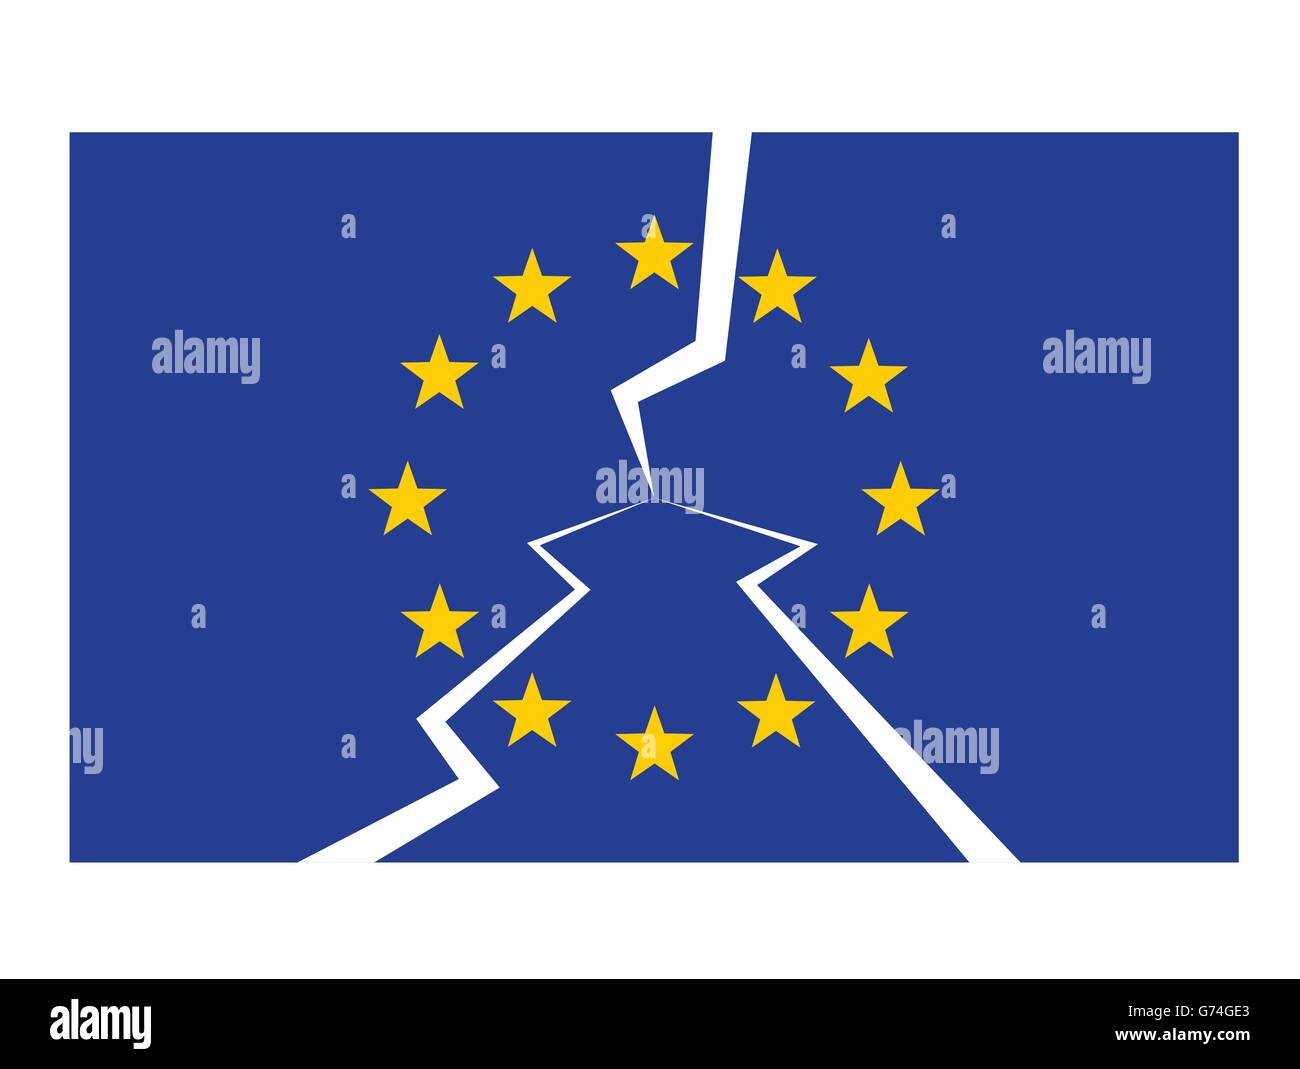 european union flag cracked as eu disintegration crisis concept vector illustration Stock Vector